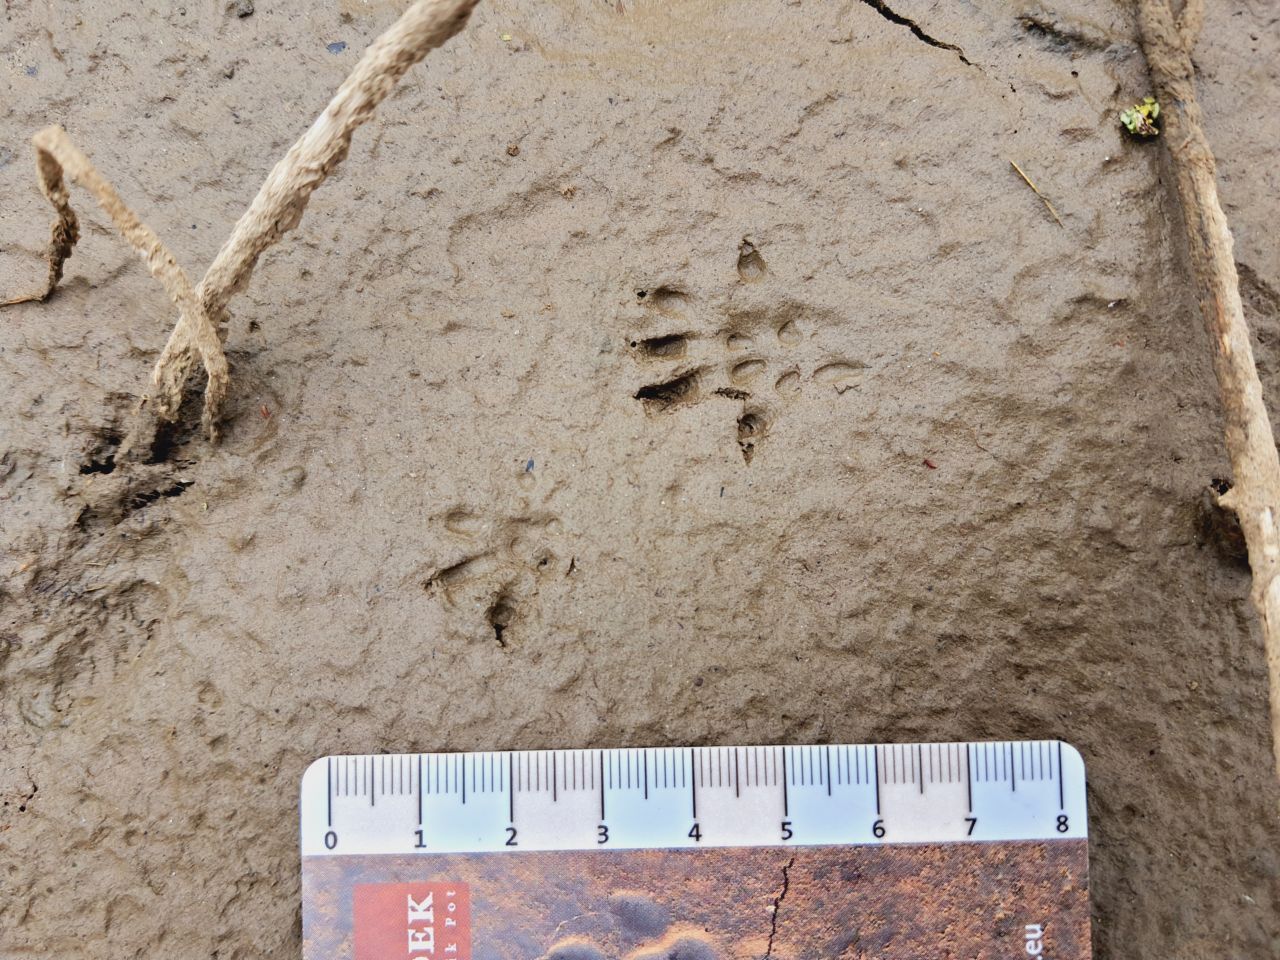 Spuren auf schlammigem Boden bleiben lange erhalten. Diese Abdrücke stammen von einer Wanderratte.  